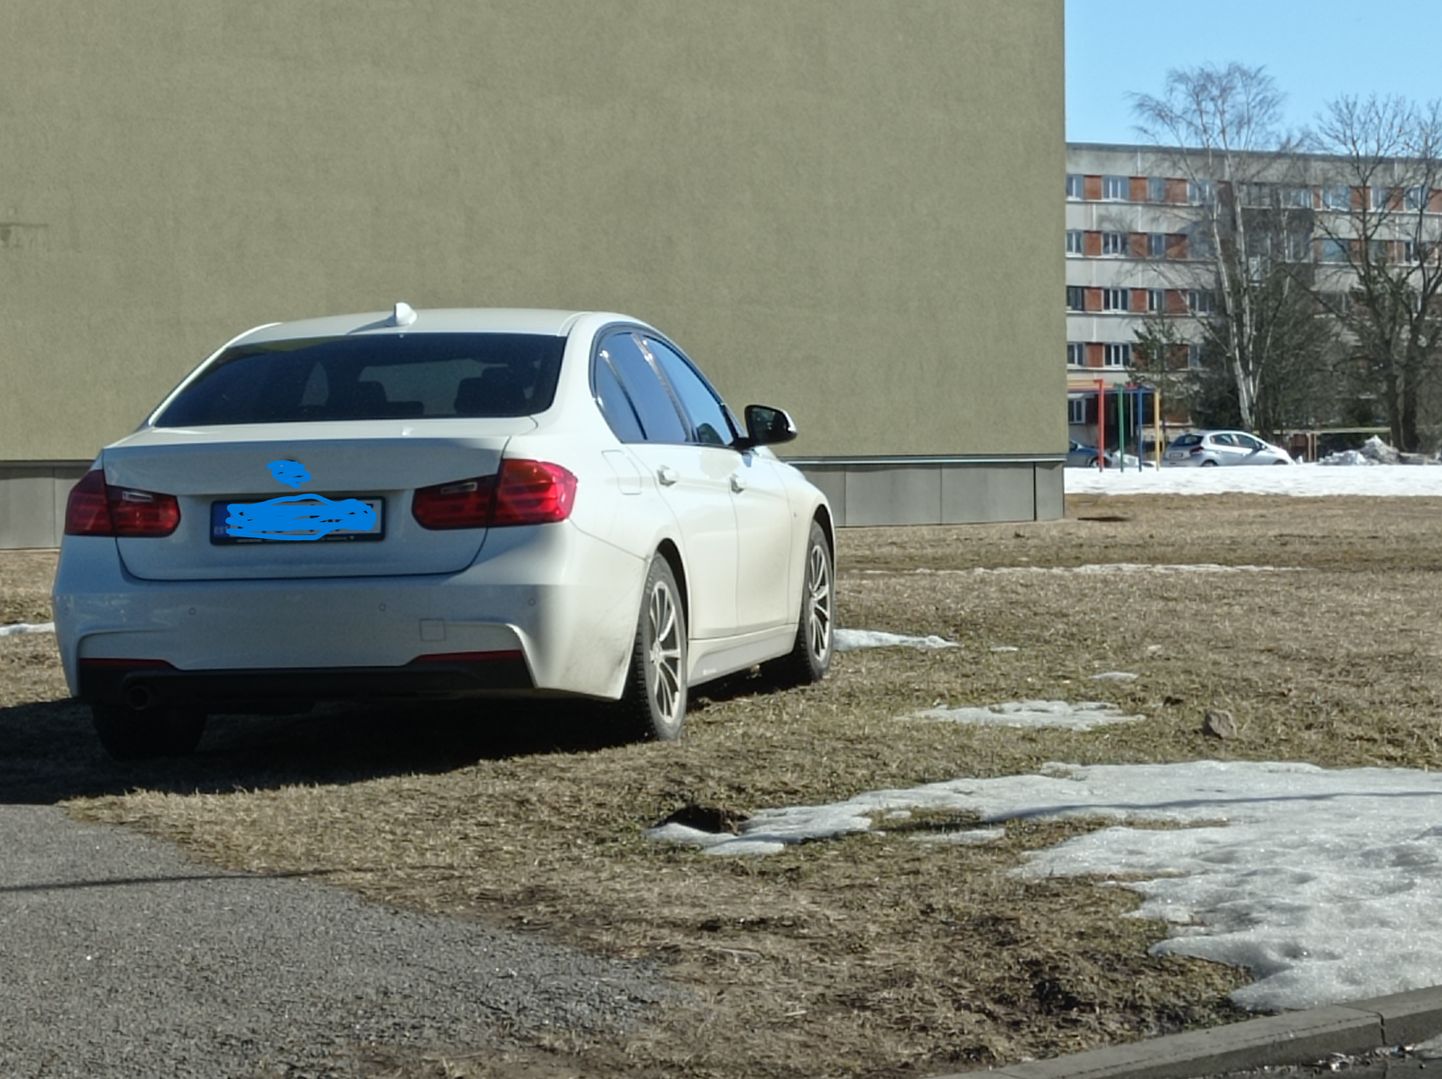 Этот автомобиль явно не на правильном месте - владельцу придется отвечать за нарушение правил парковки.